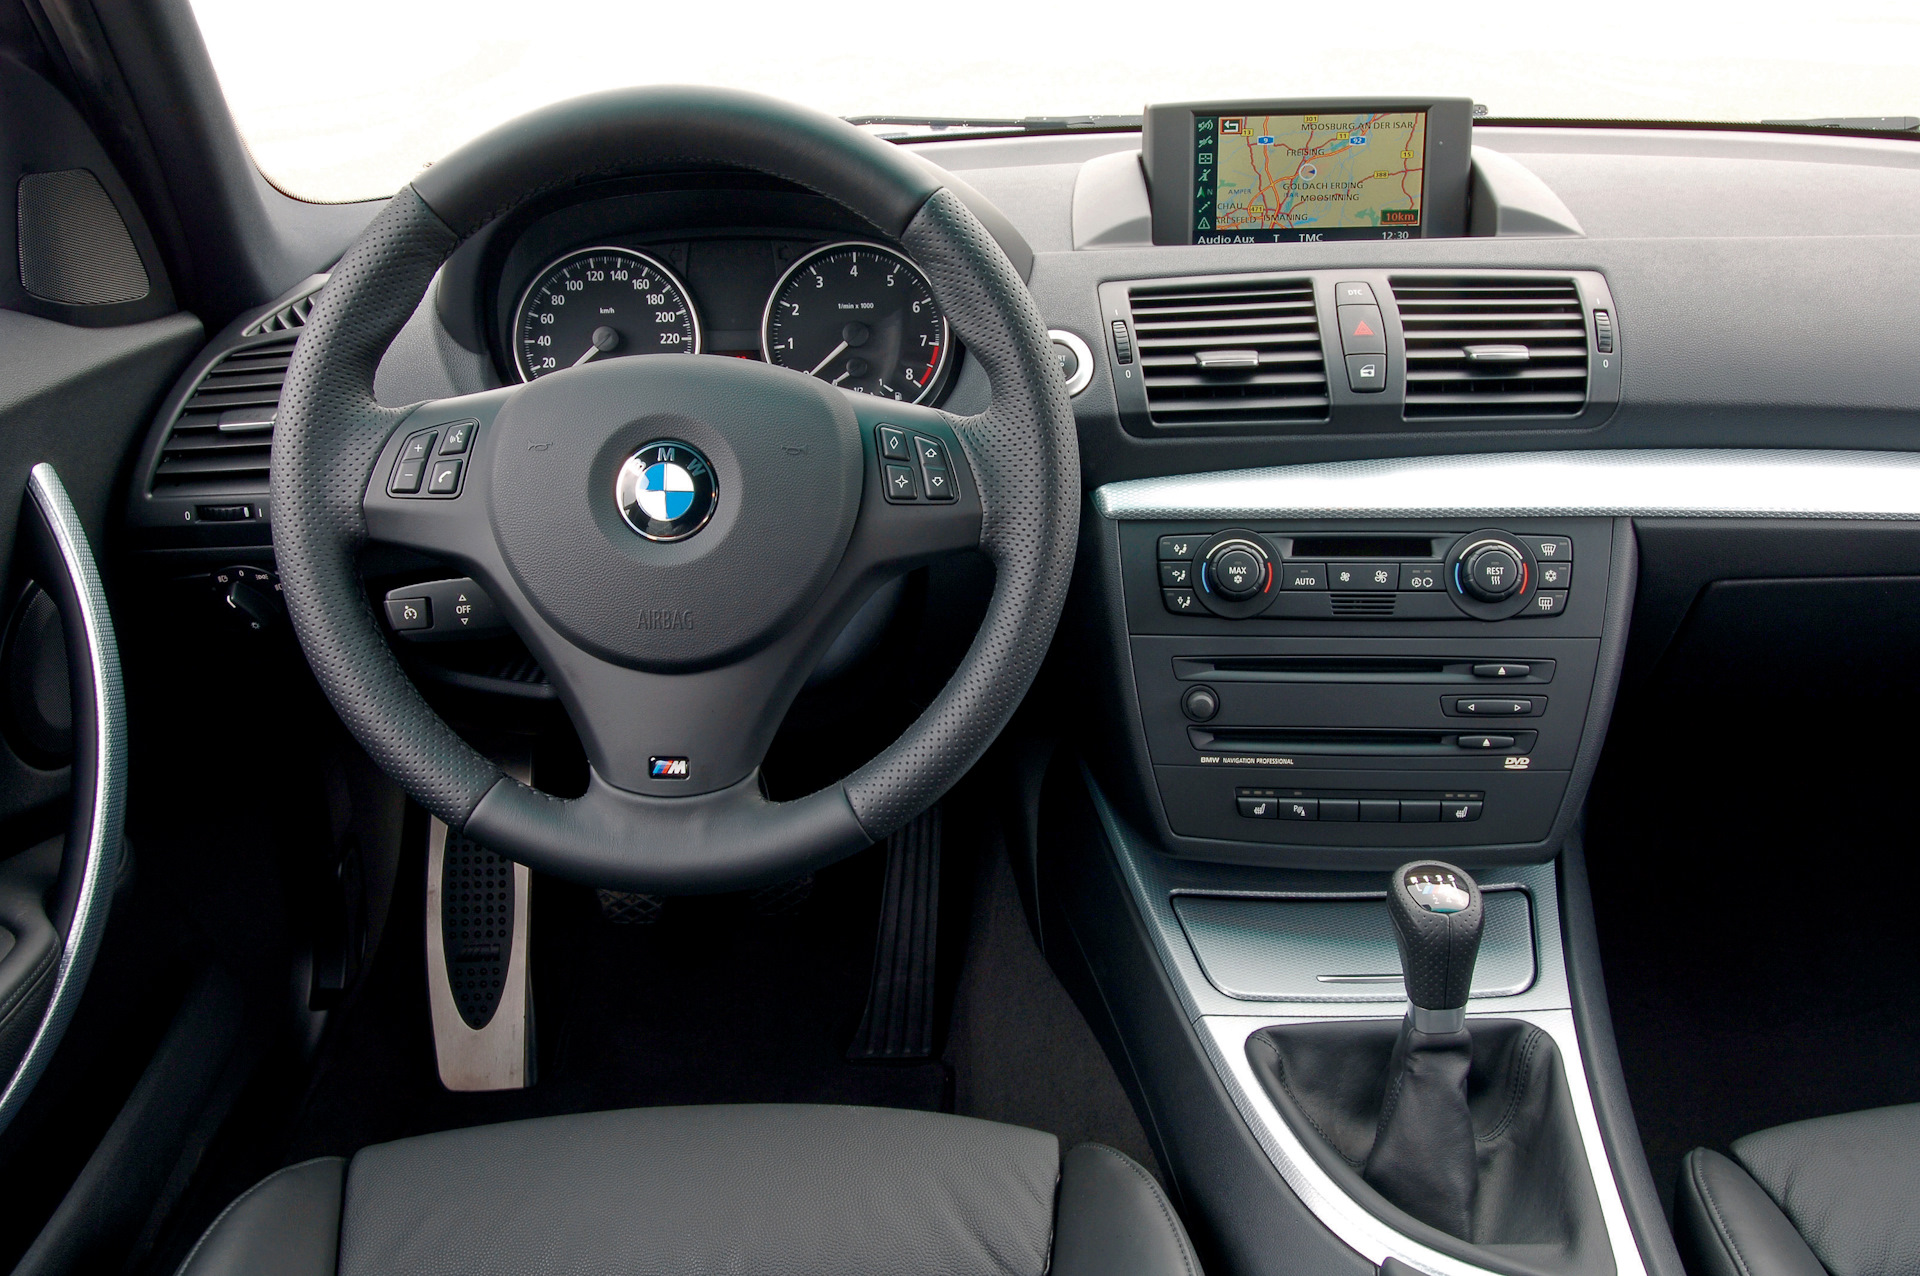 Как закрыть люк на BMW 1-Series Е87 вручную?